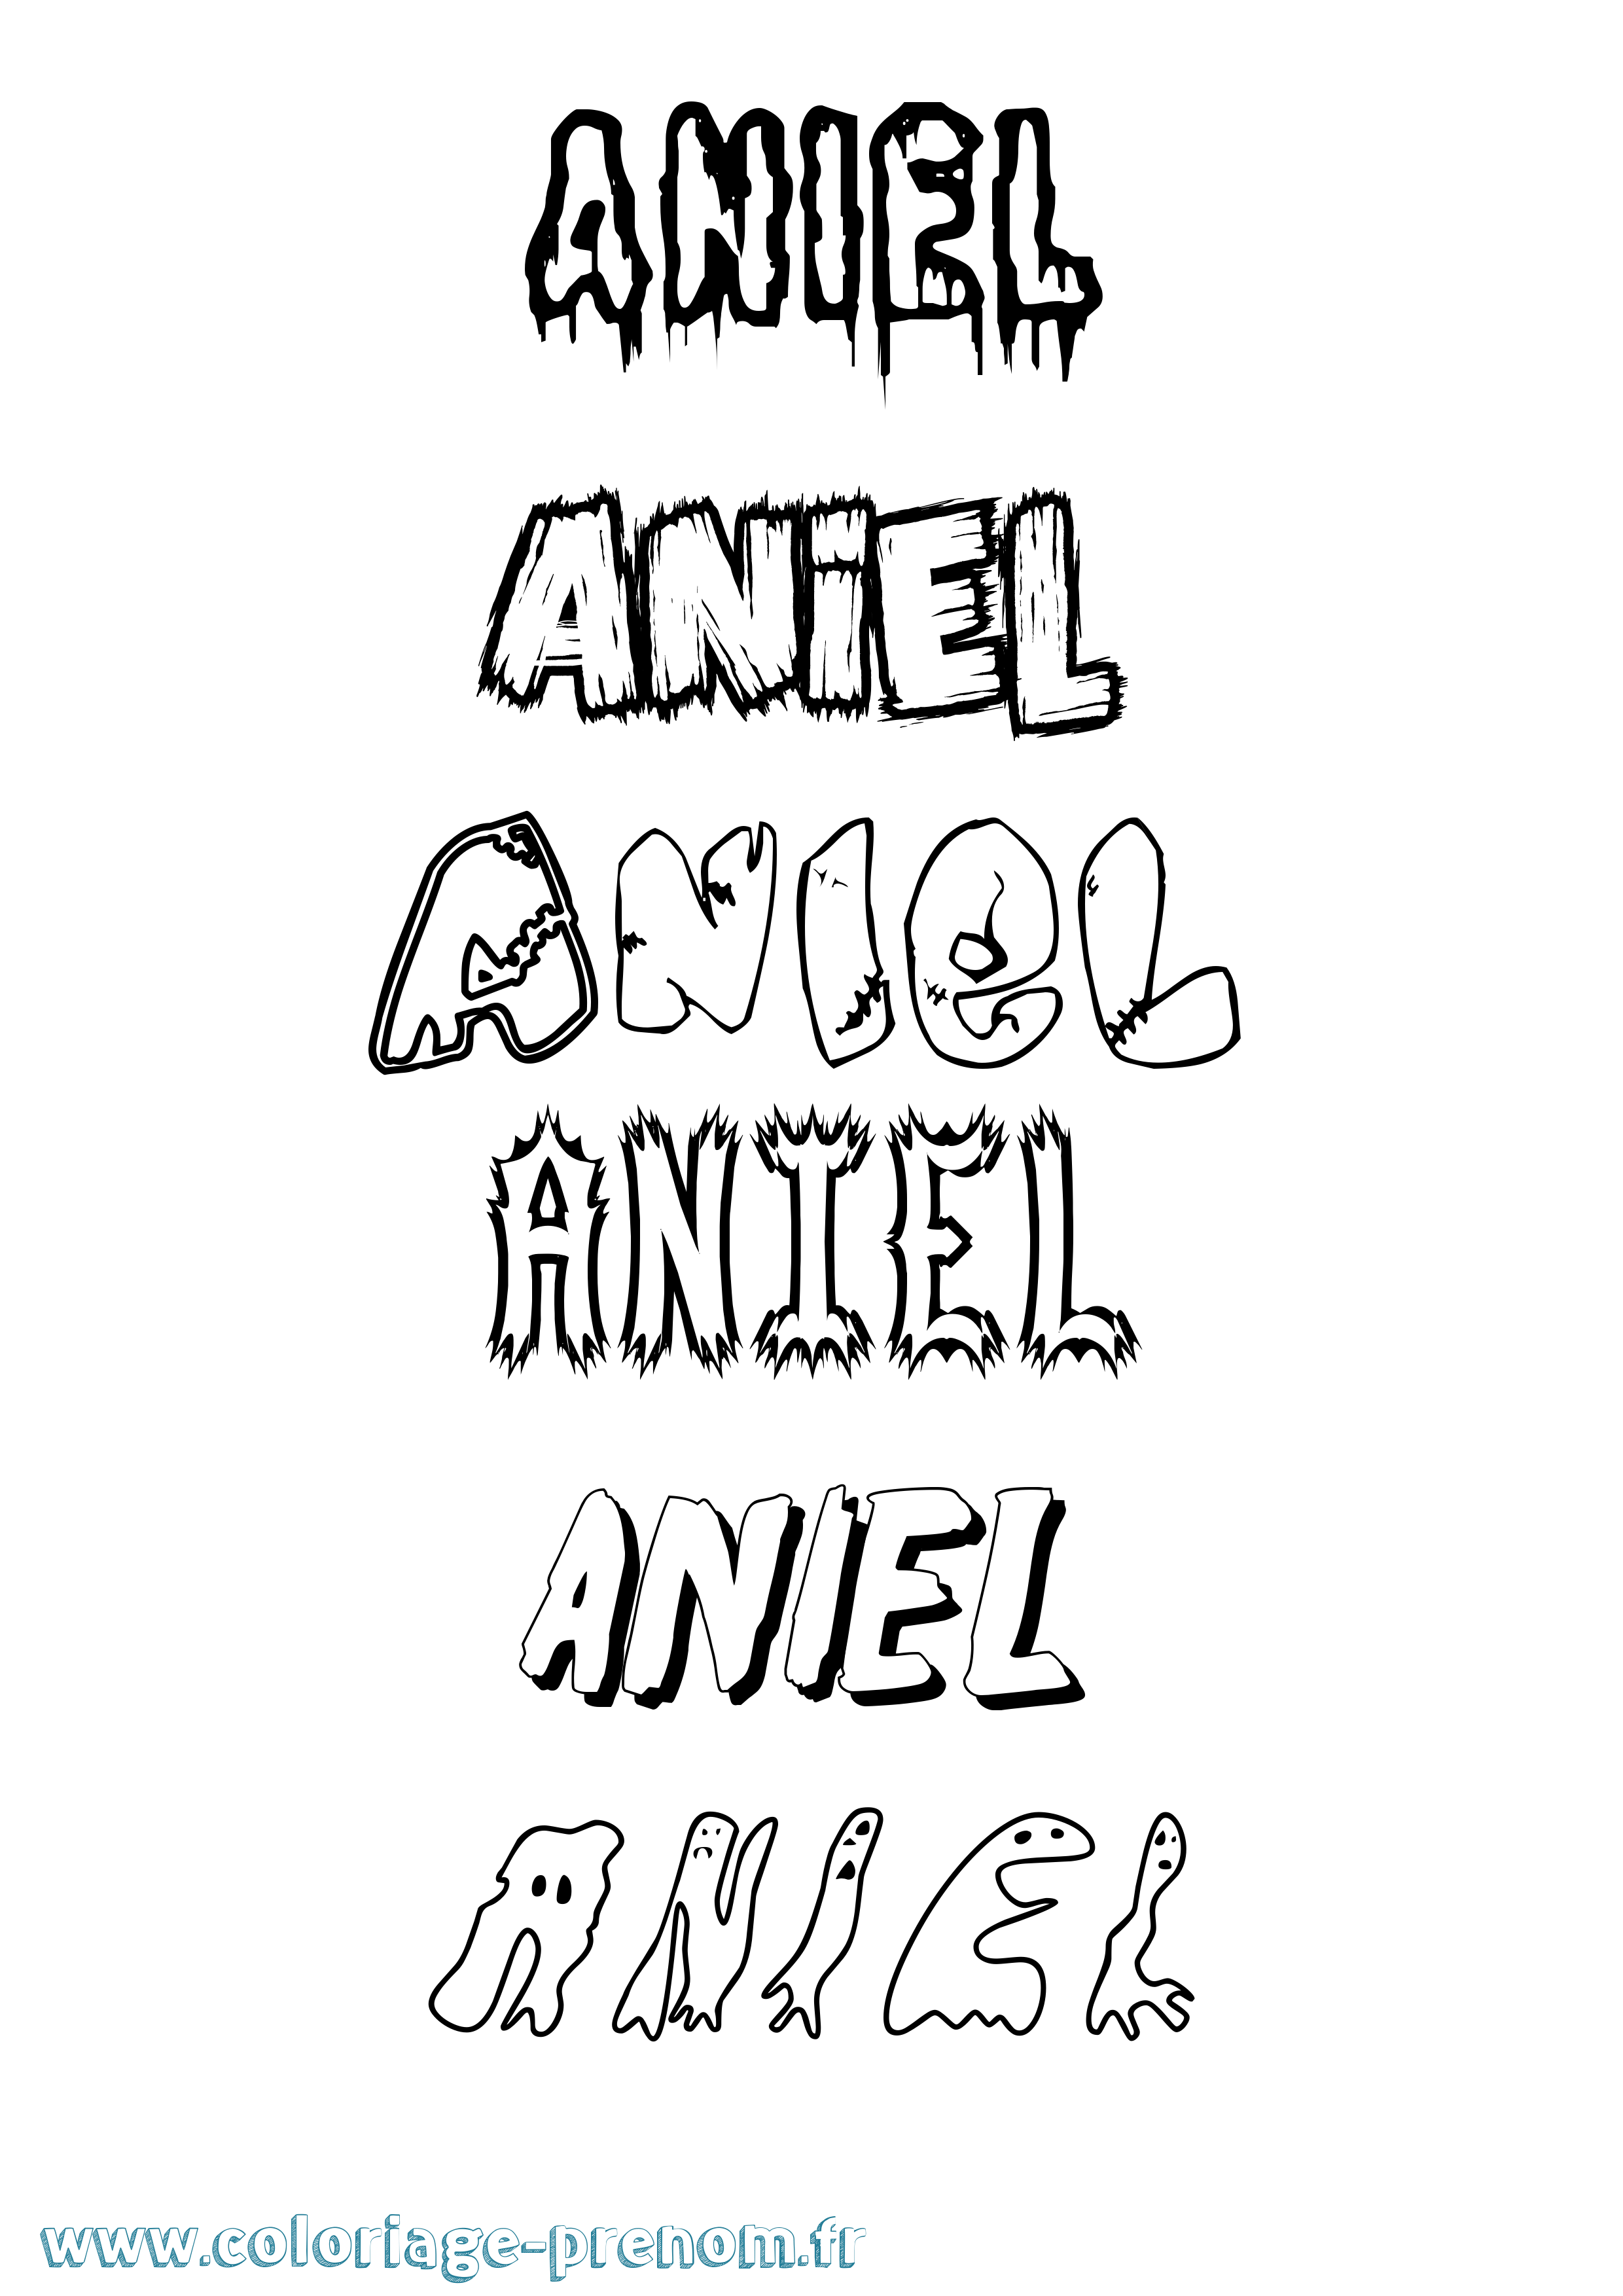 Coloriage prénom Aniel Frisson